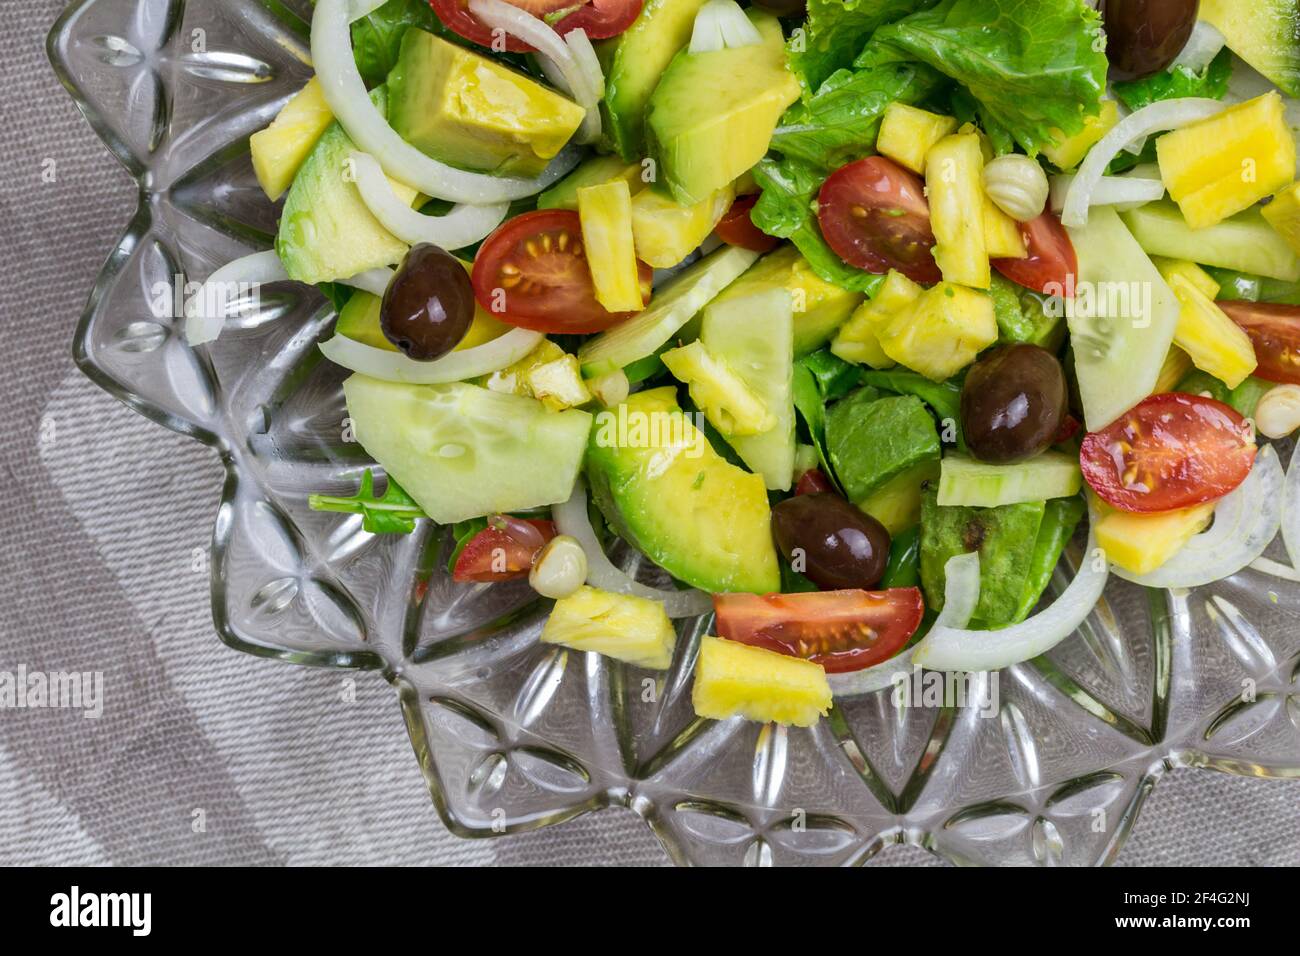 Frischer Gartensalat mit Tomaten, Salat, Avocado, Gurke, Ananas, Kapern und Oliven - Draufsicht Bild Stockfoto